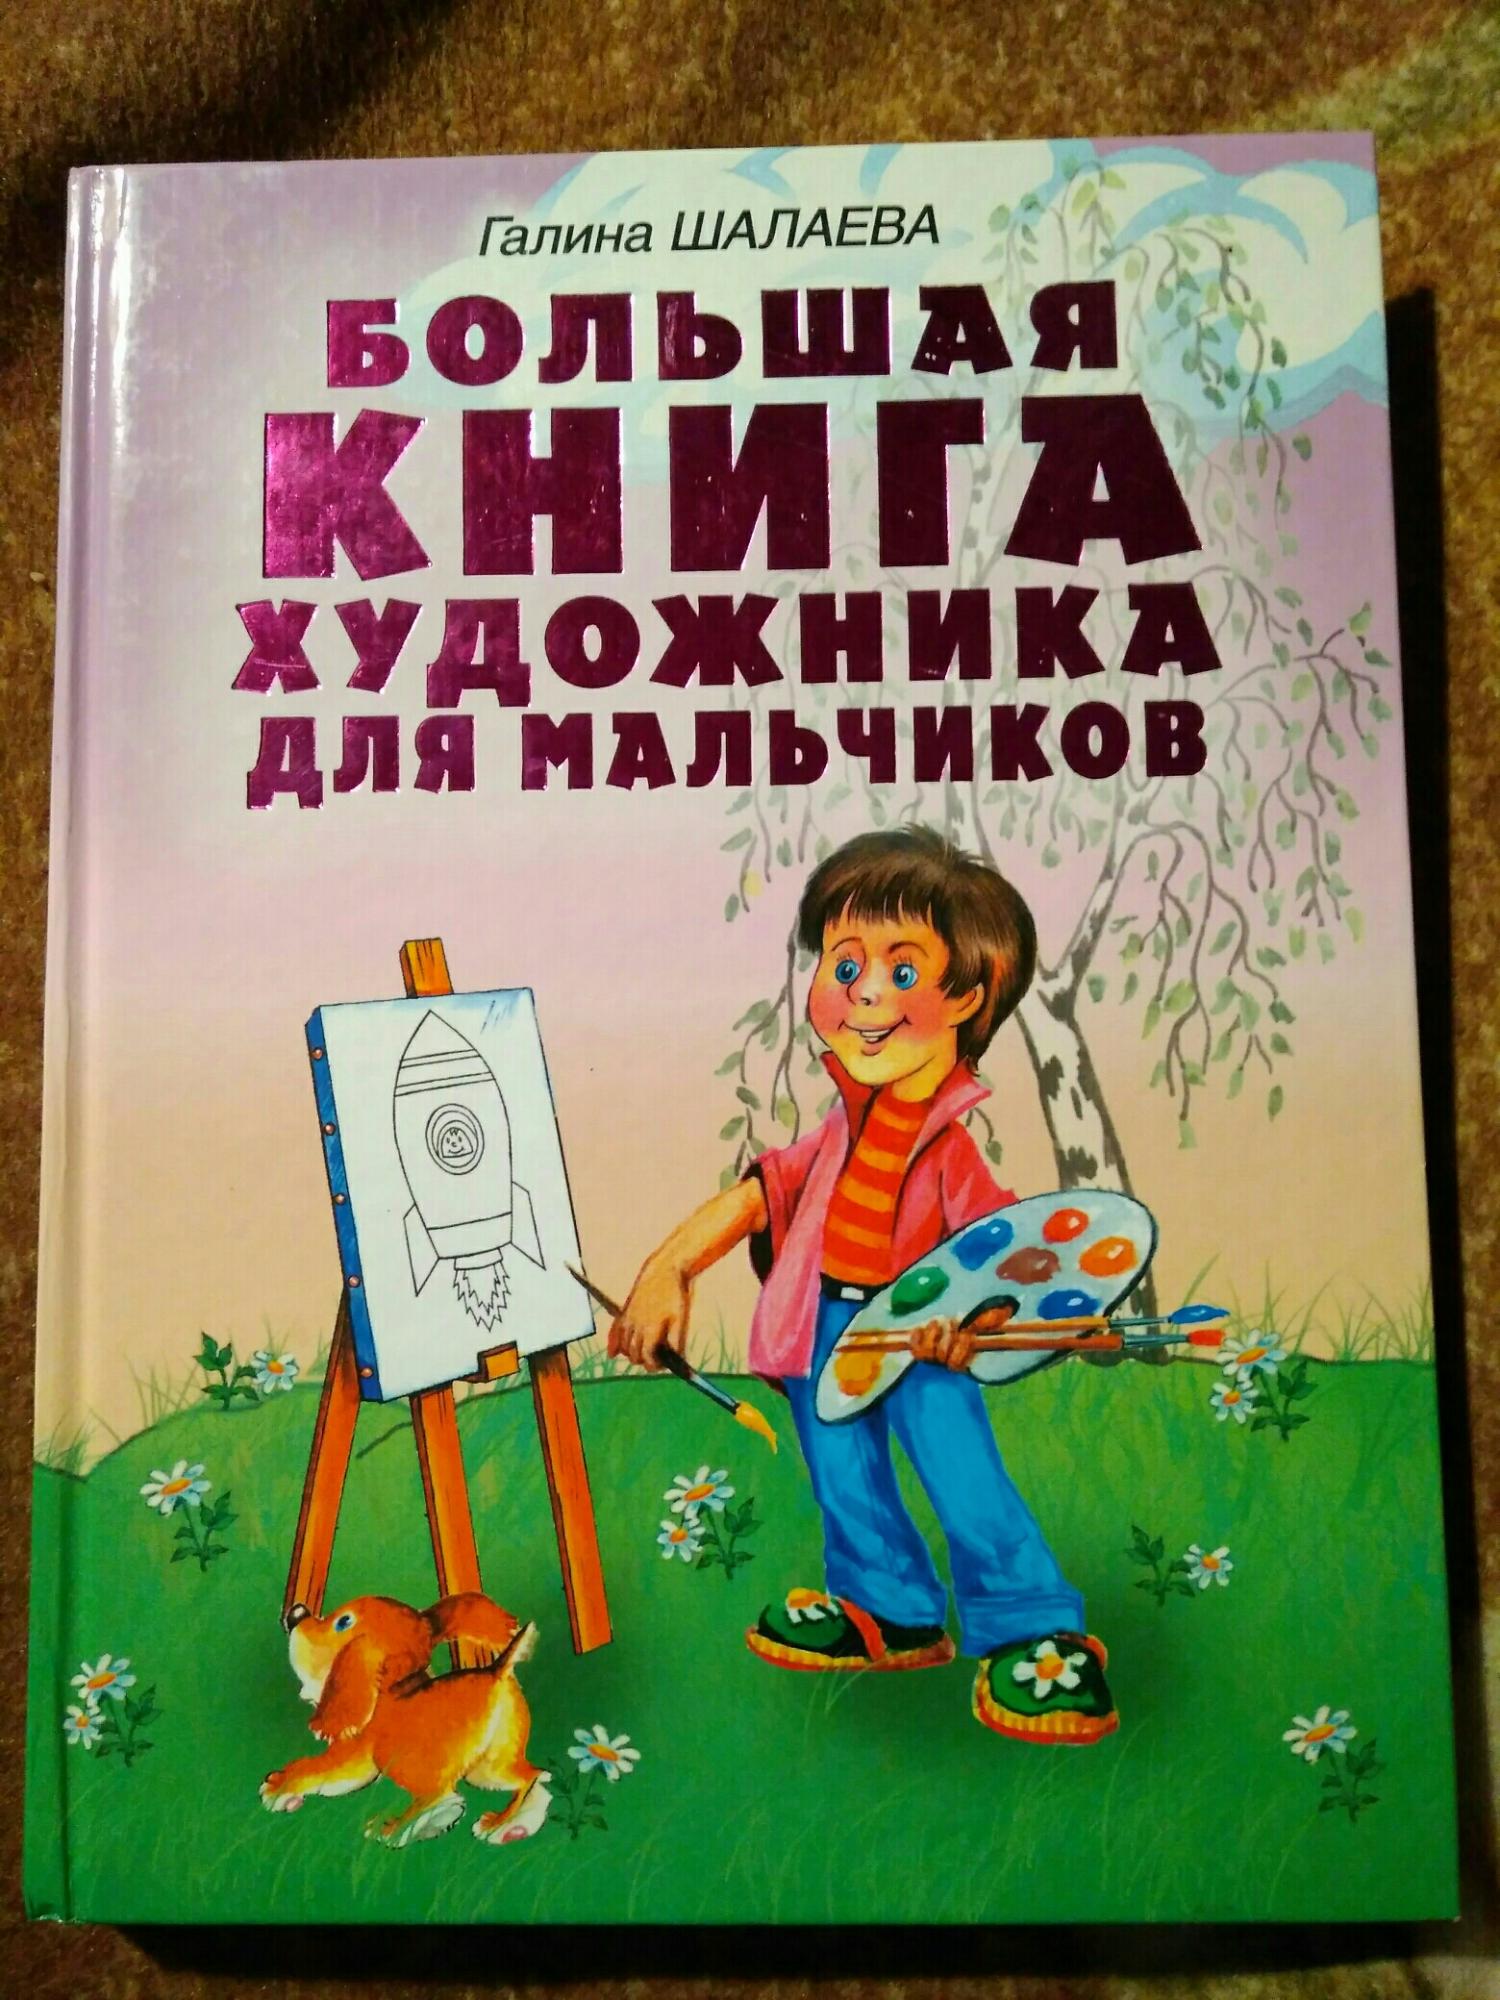 Книга по рисованию для мальчиков